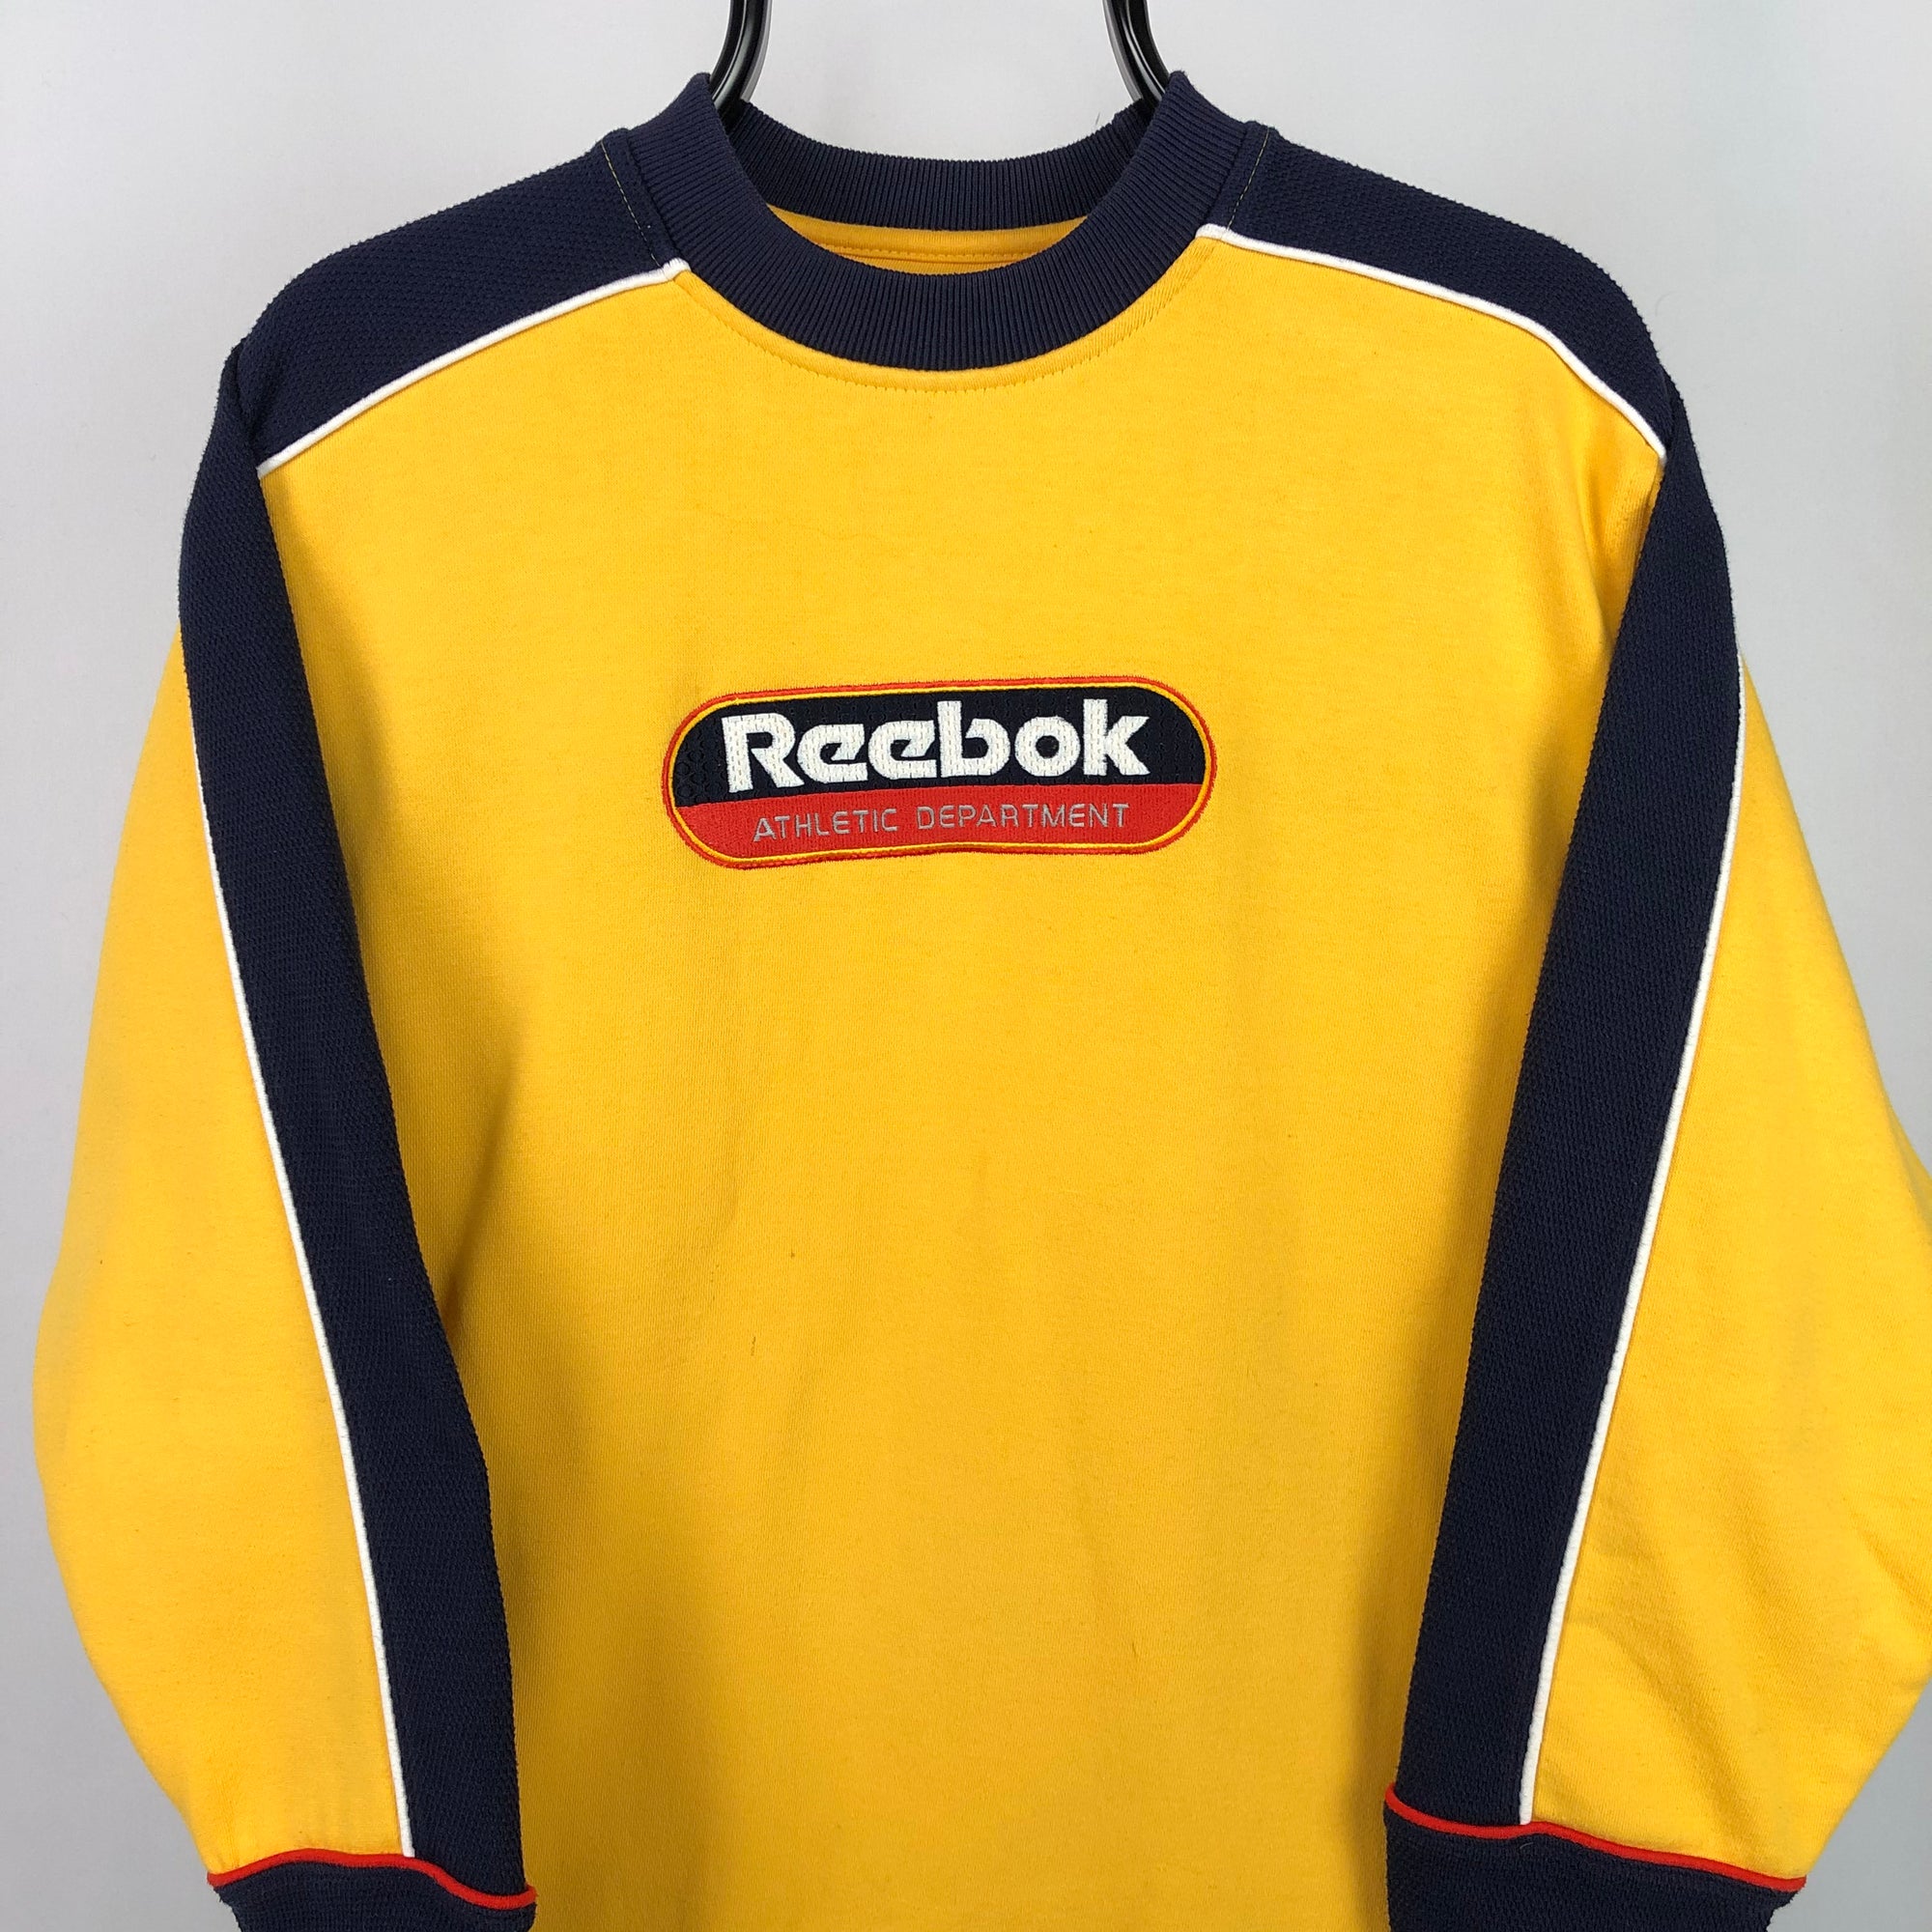 Vintage 90s Reebok Spellout Sweatshirt in Yellow/Navy - Men's Small/Women's Medium